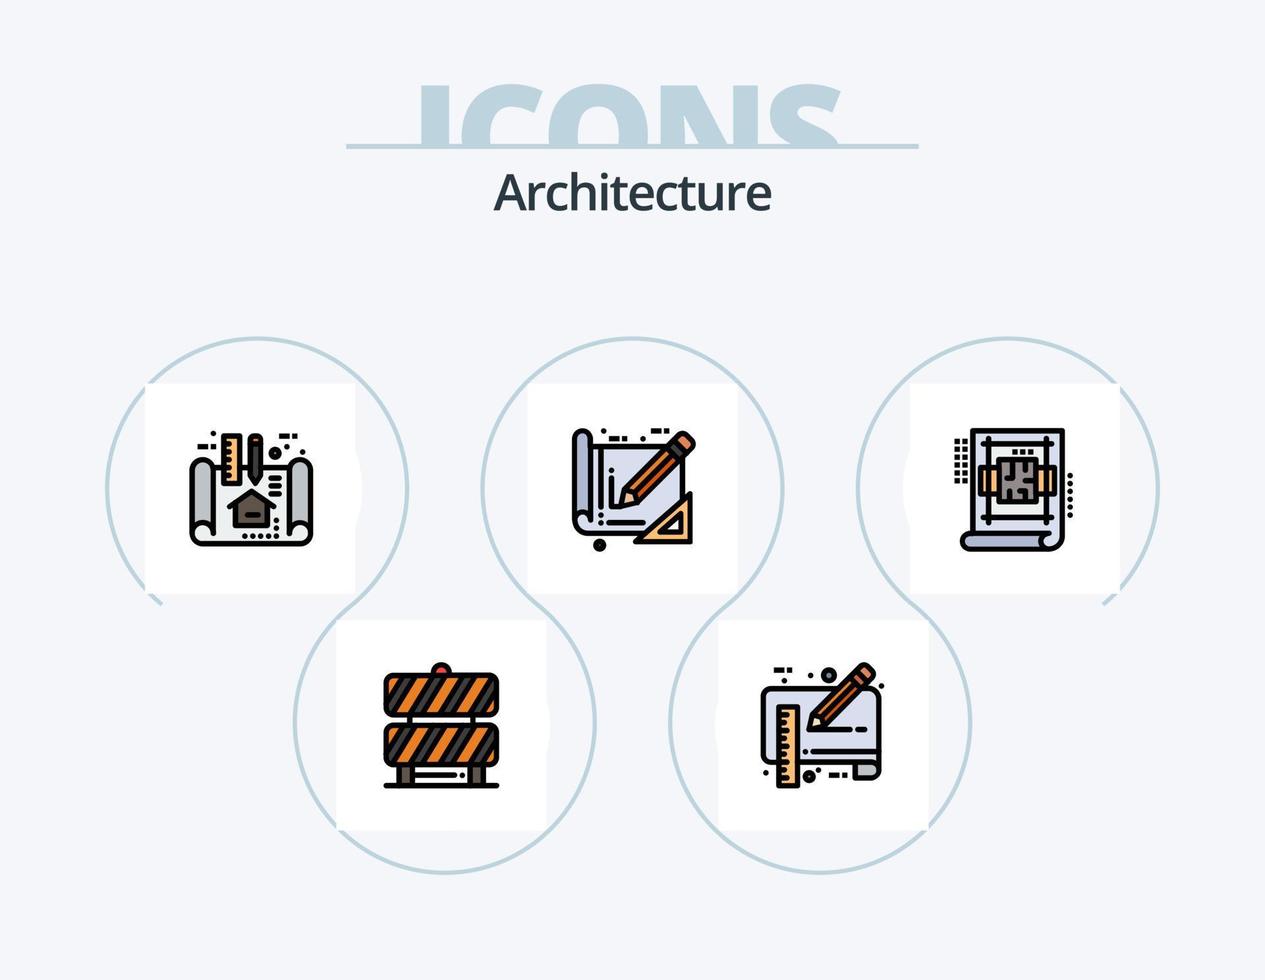 Architekturlinie gefüllt Icon Pack 5 Icon Design. die Architektur. Bank. machen. die Architektur. planen vektor